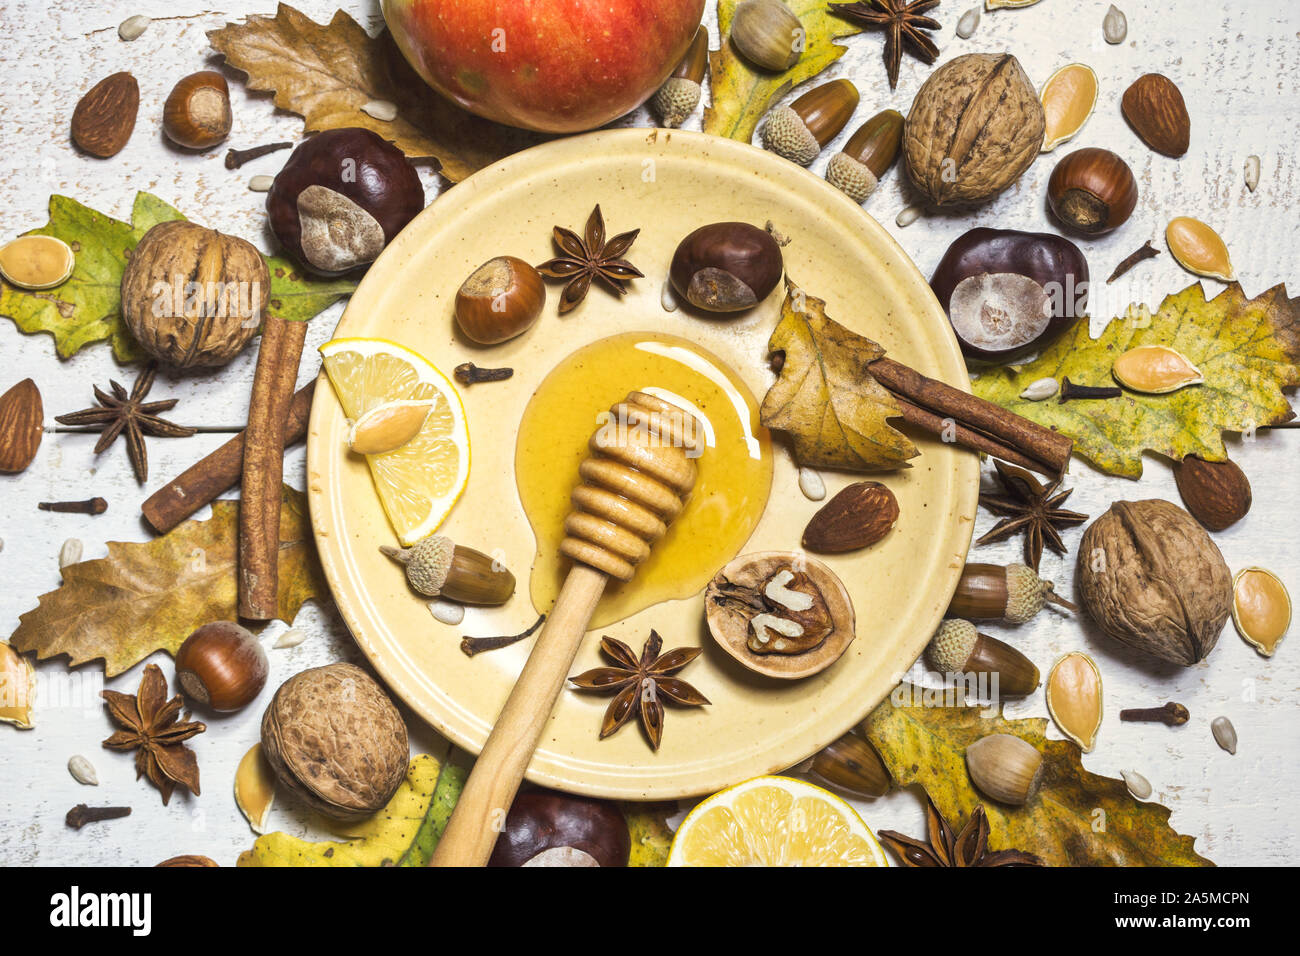 Herbst Zusammensetzung mit Nüssen, Honig, Samen, Gewürze, Eicheln,  Kastanien, Früchte und Blätter im Herbst. Ansicht von oben, flach  Stockfotografie - Alamy